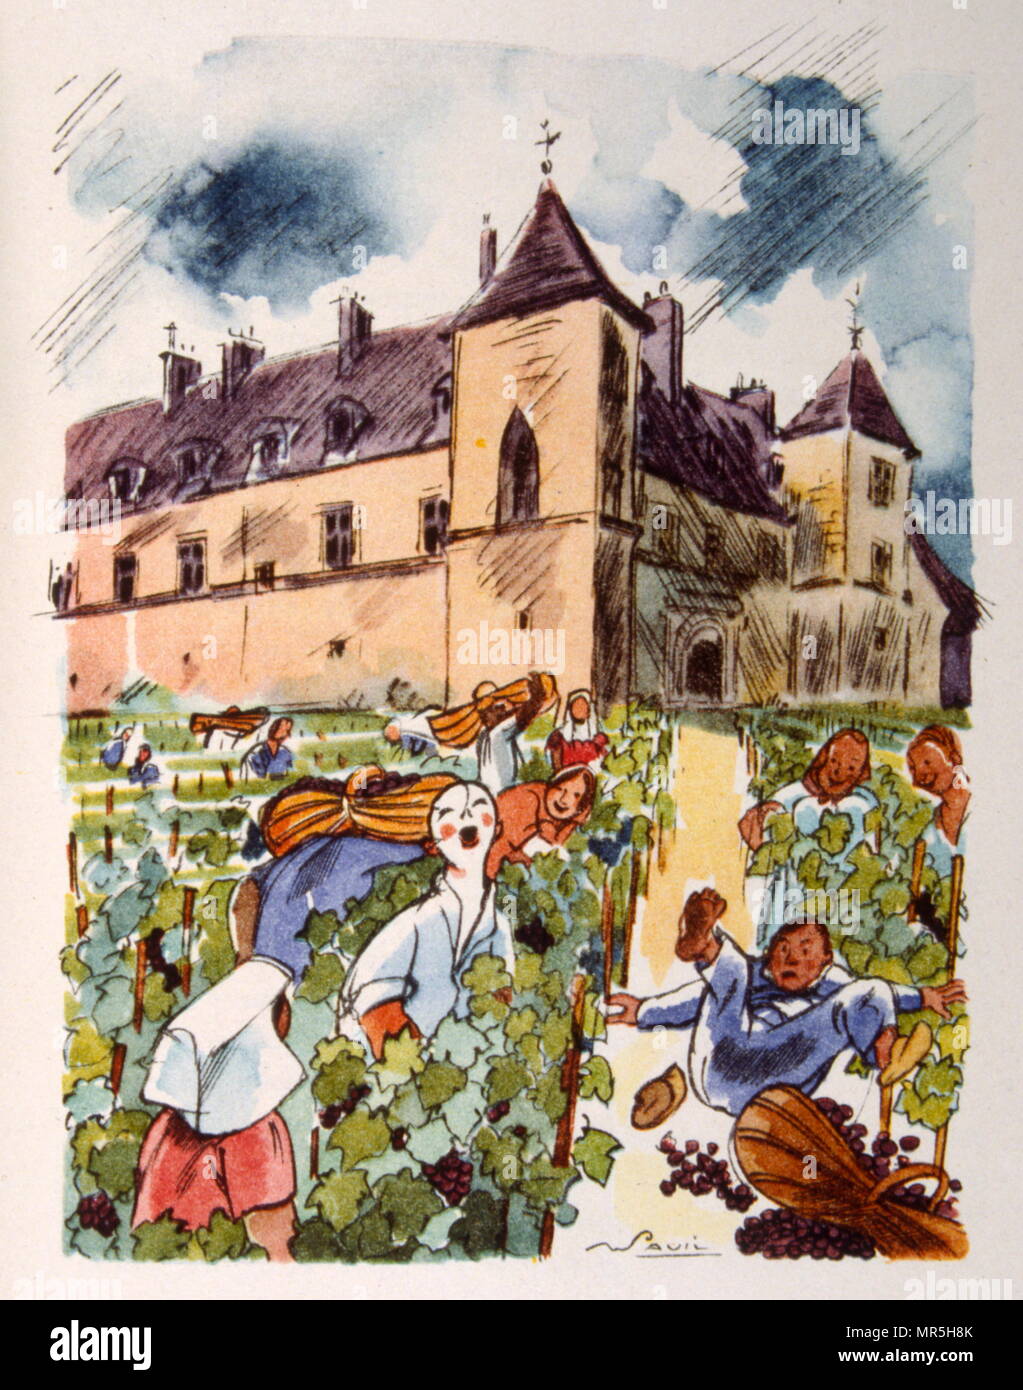 Französische Weinberg, 1944, Illustration von Julien Pavil, (1895-1952), französischer 20. Jahrhundert Illustrator, Humorist und Poster Artist. Er illustrierte mehrere Bücher zwischen 1929 und 1945. Stockfoto